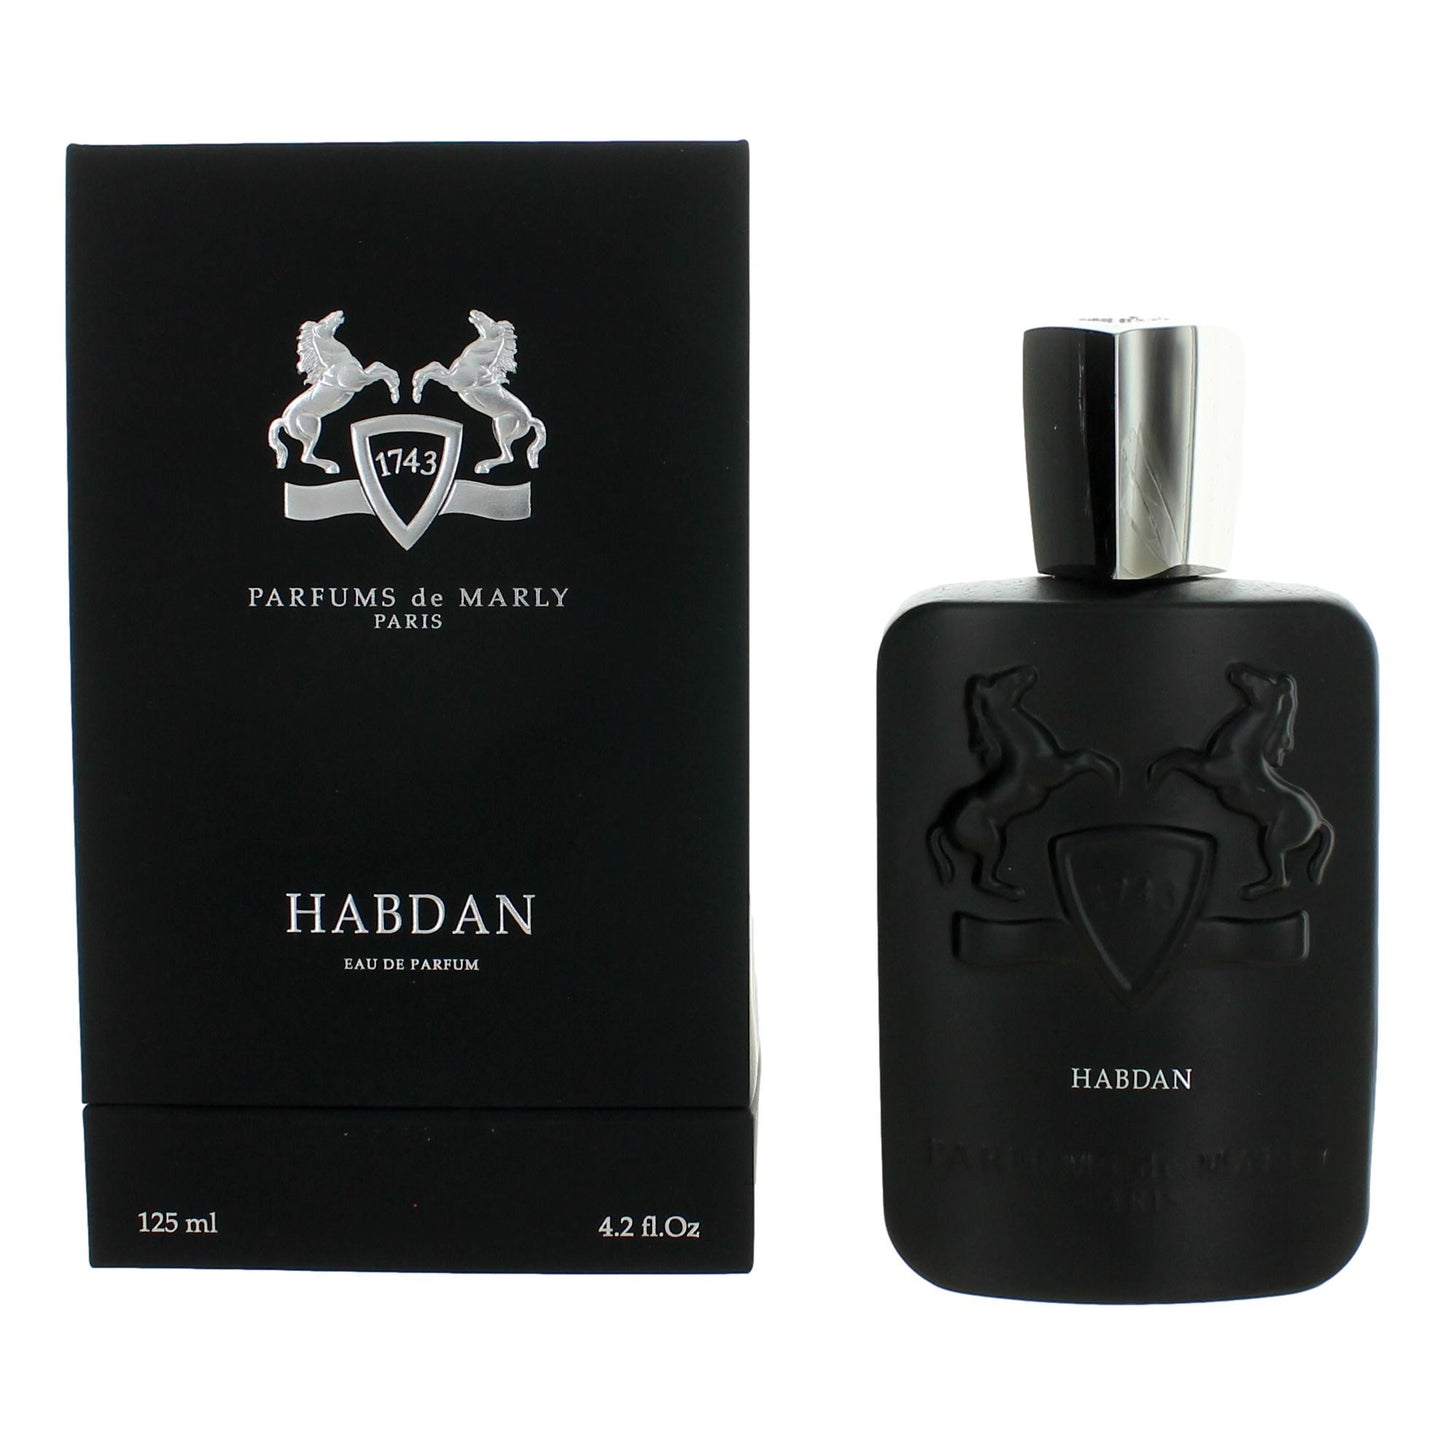 Parfums de Marly Habdan by Parfums de Marly